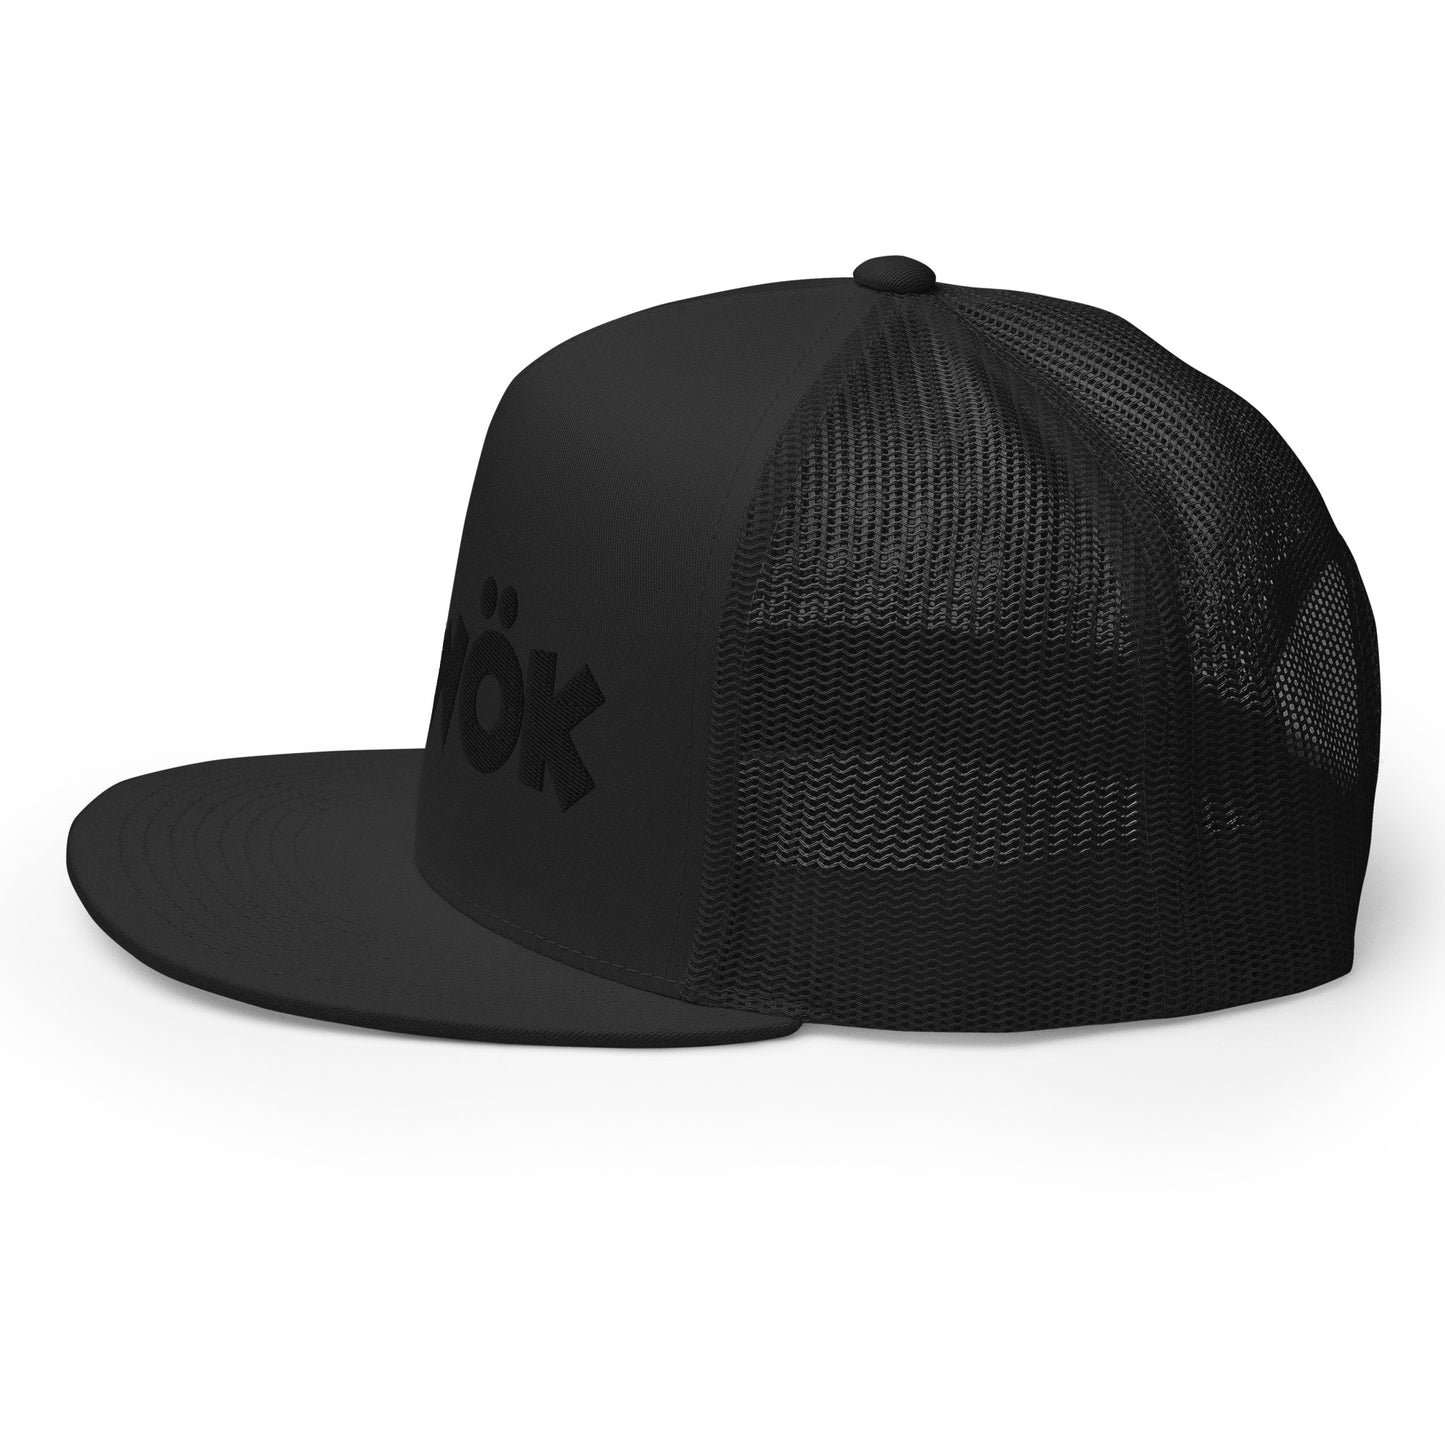 Skwok Brand / Hat / Trucker Cap / OG Logo / 3d Puff / Black / Black